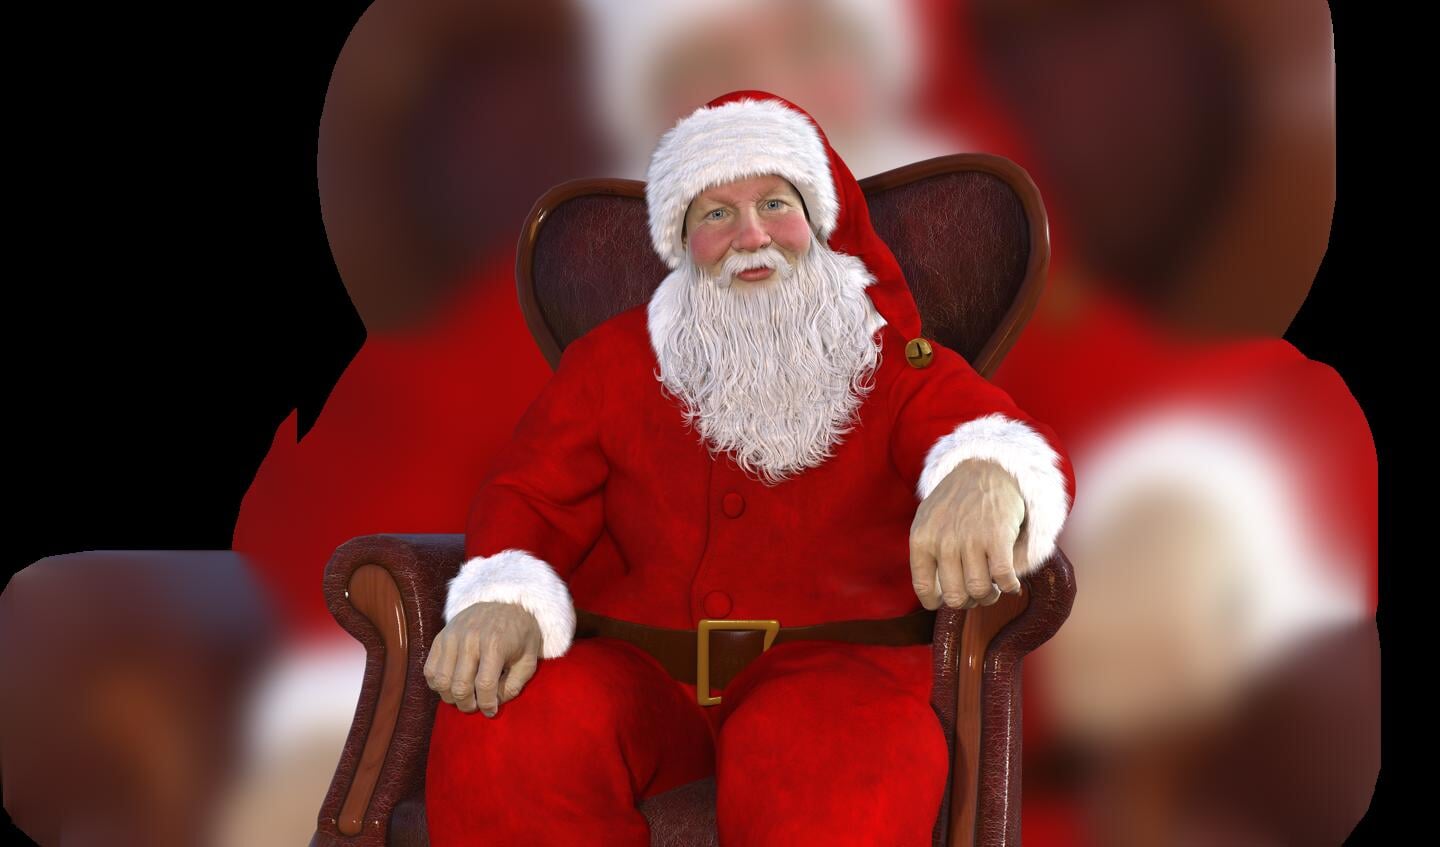 Julemanden har røde kinder og er glad - det er nok, fordi han har fået ...vingummi, varm mælk eller måske en kiks?